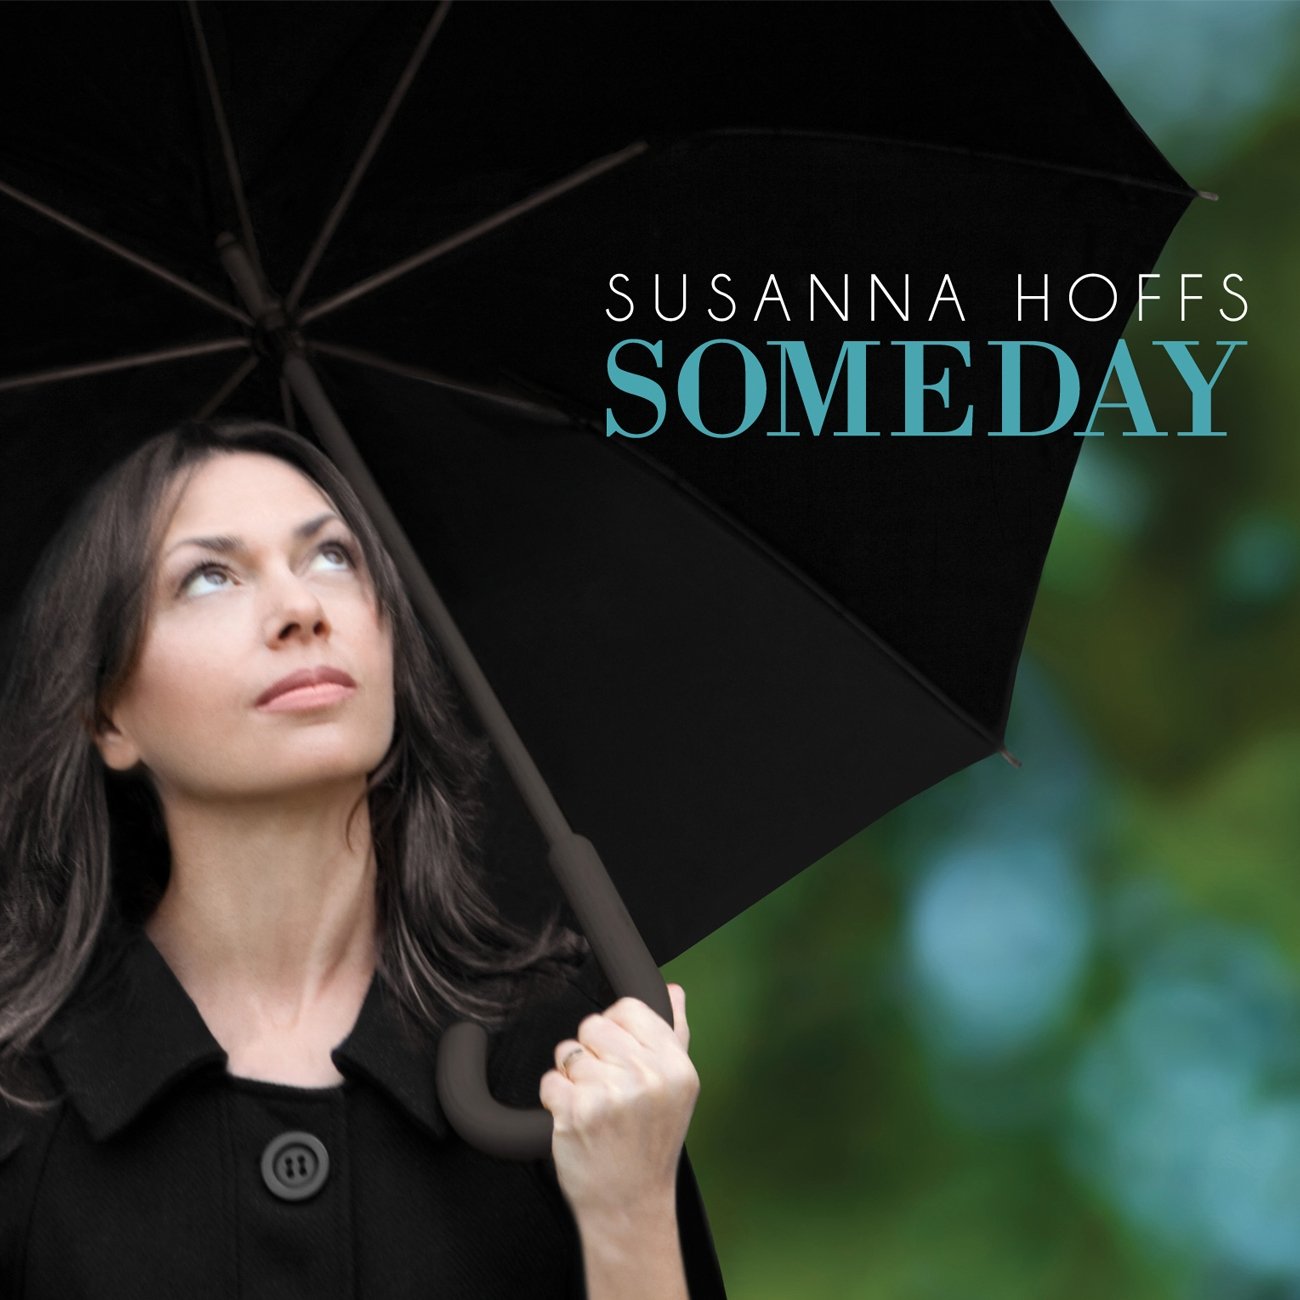 Susanna Hoffs Someday